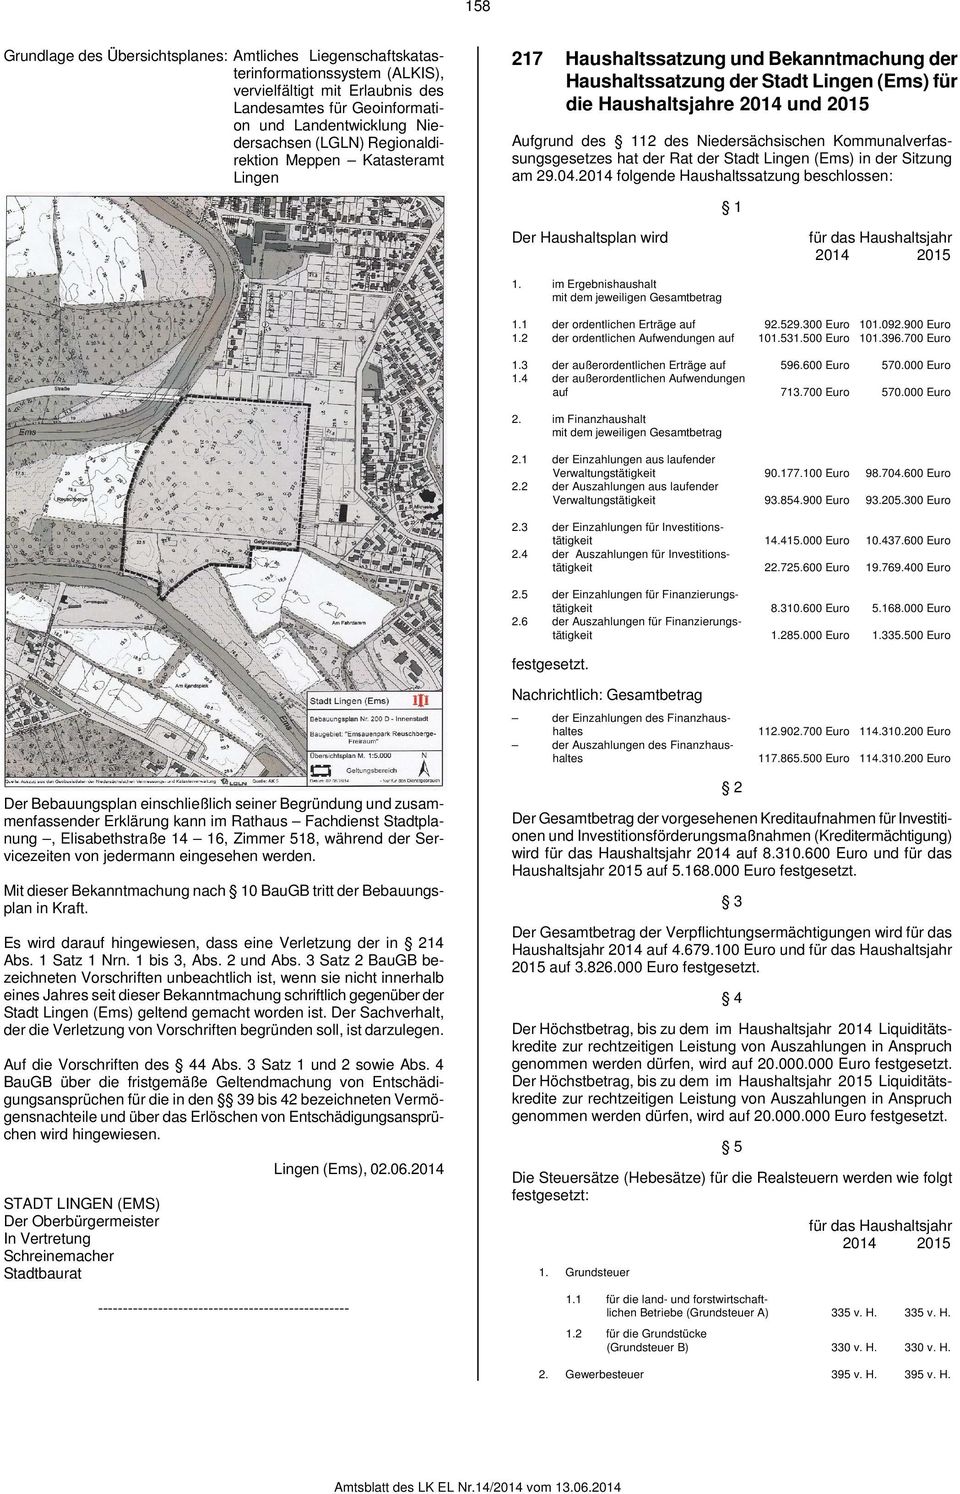 Niedersächsischen Kommunalverfassungsgesetzes hat der Rat der Stadt Lingen (Ems) in der Sitzung am 29.04.